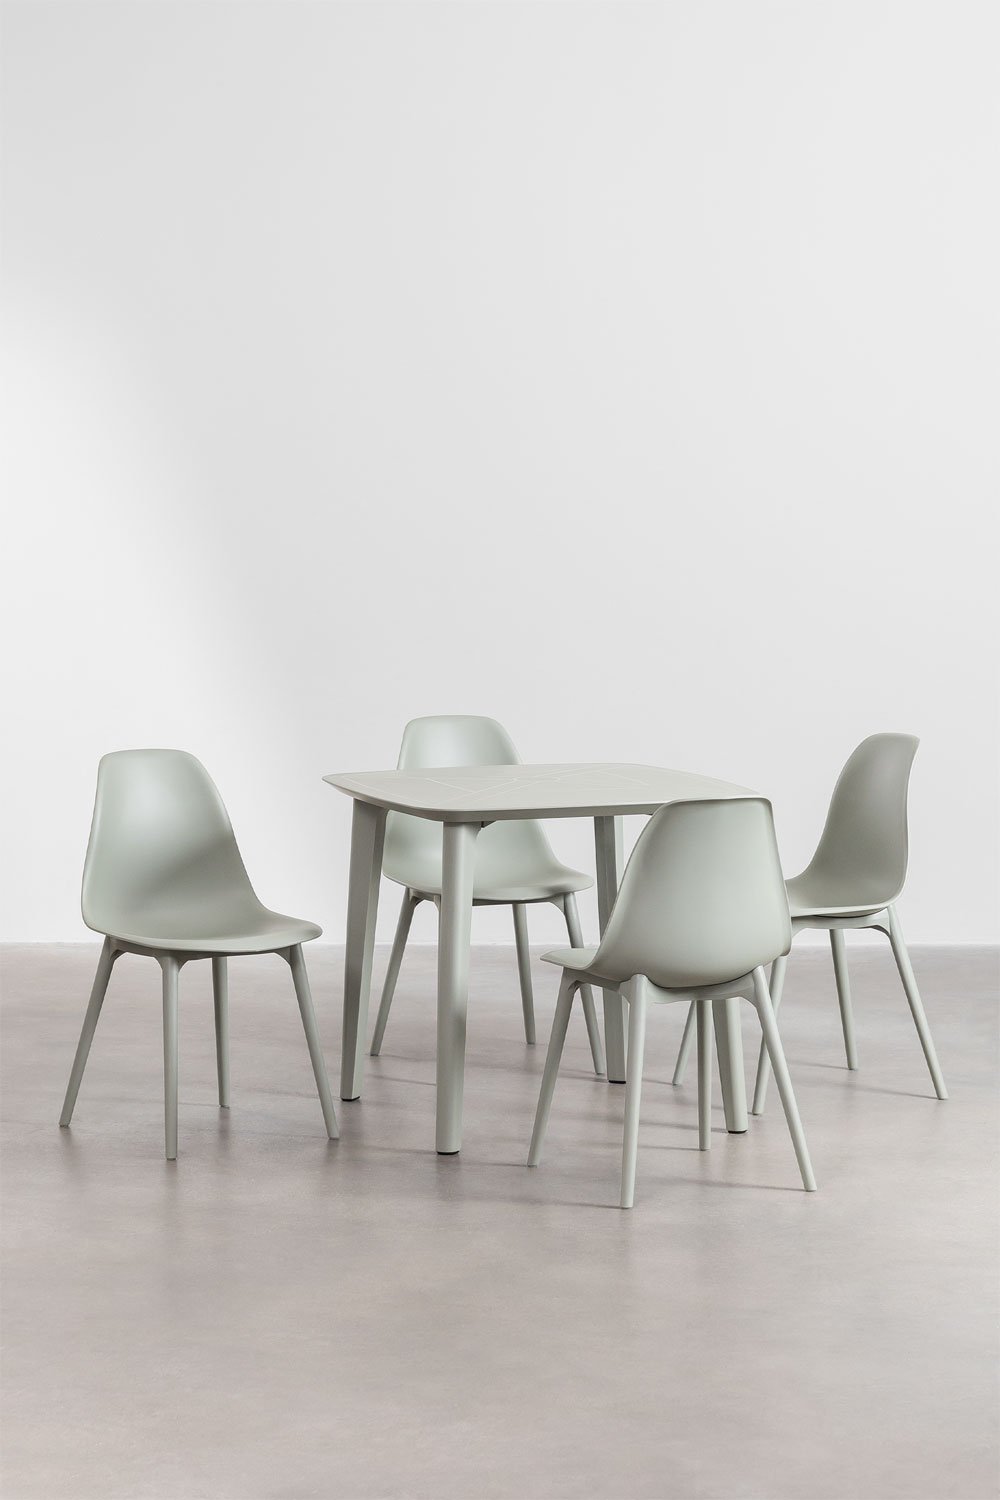 Ensemble de table de jardin carrée en polyéthylène (85x85 cm) Nati et 4 chaises de jardin Scand, image de la galerie 1